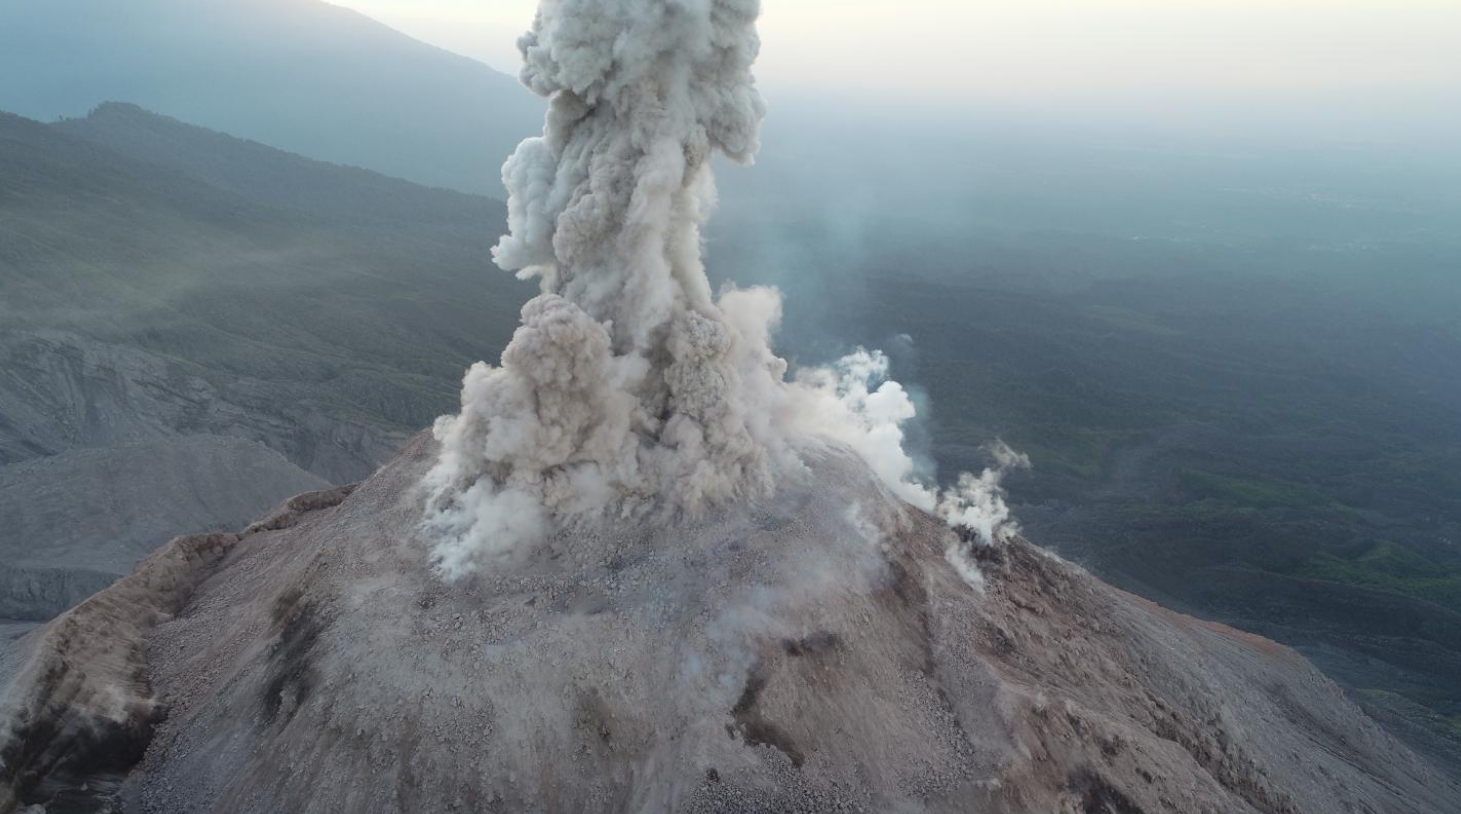 Santa-maria-volcano-may-29-2020